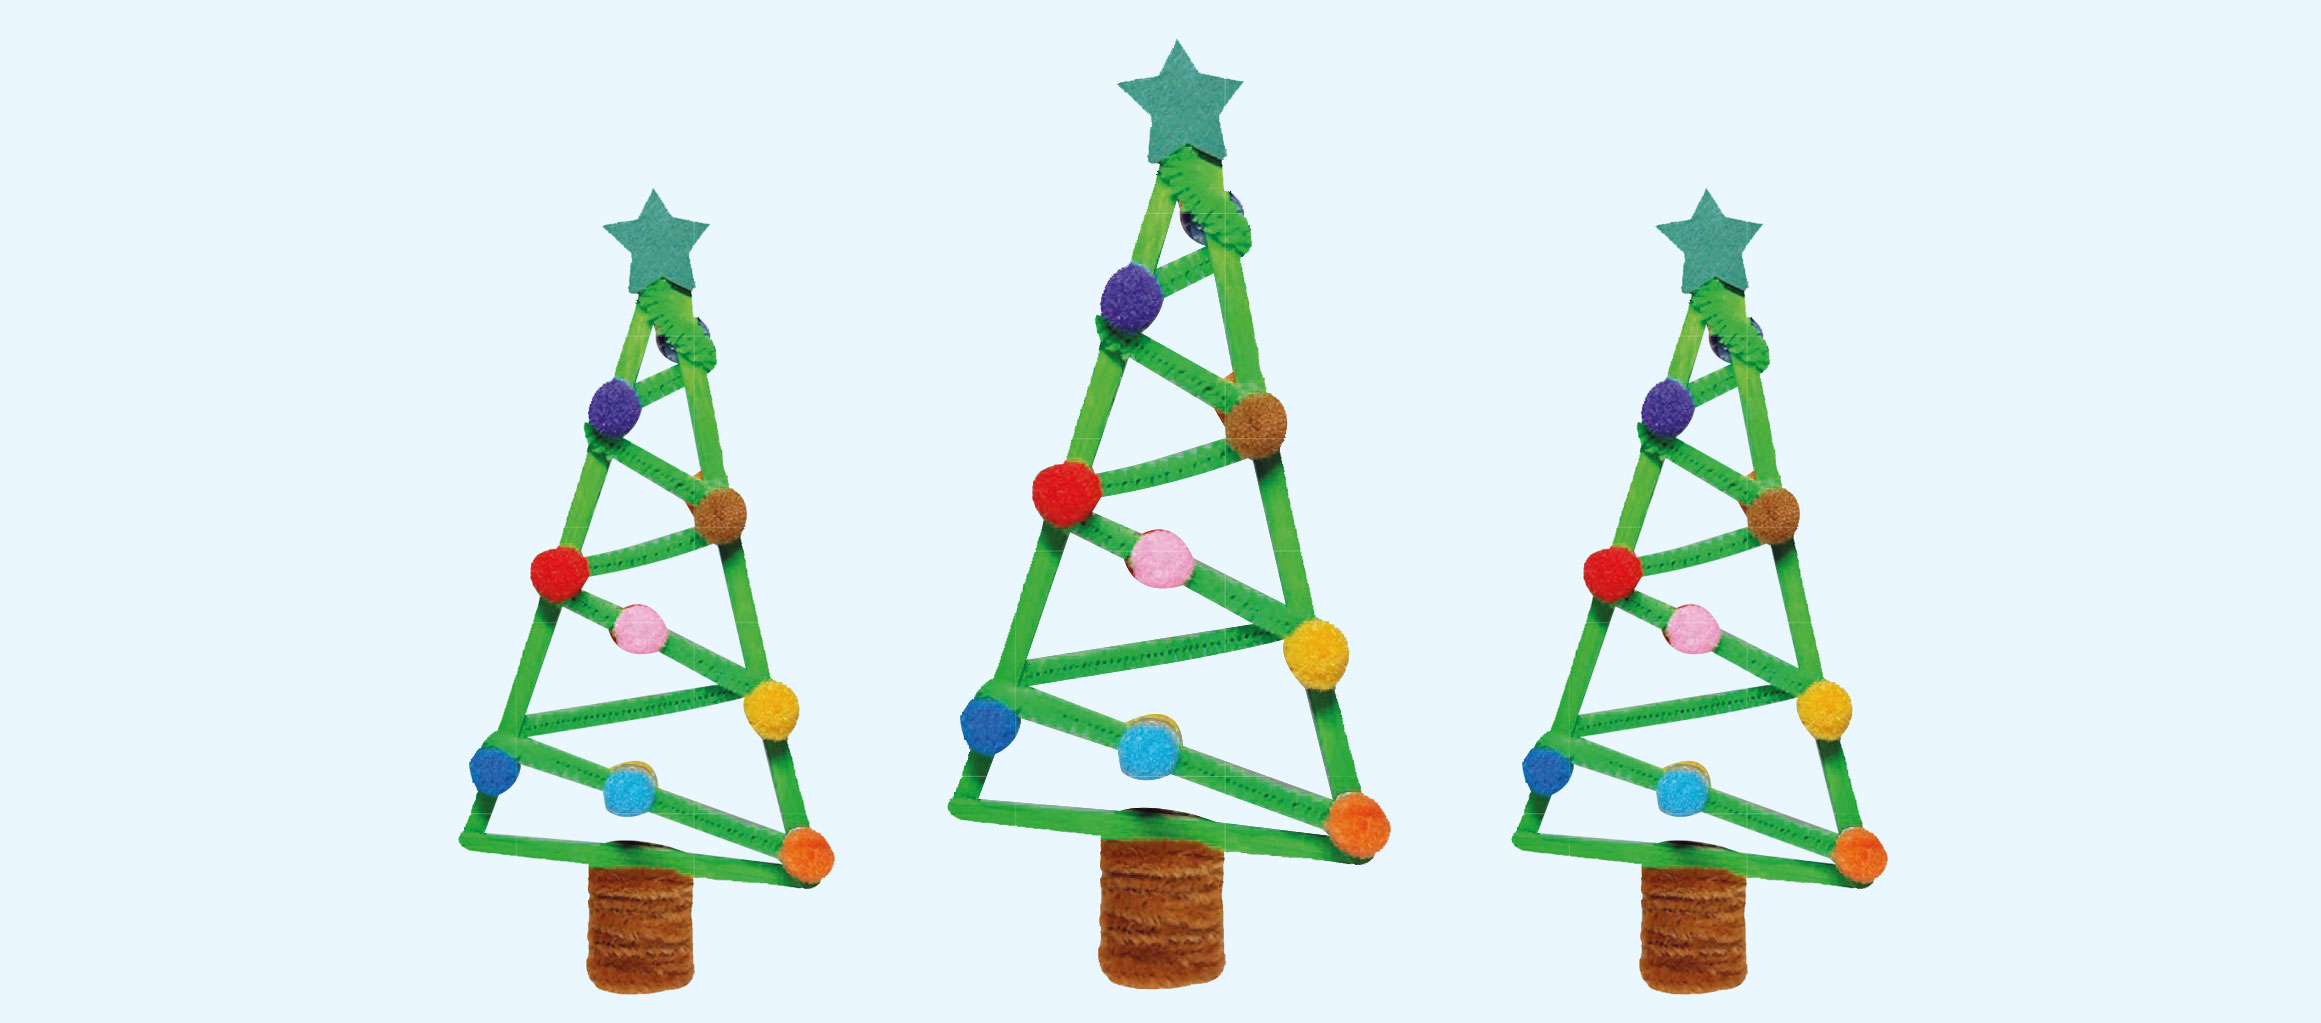 Stäbchen-Weihnachtsbaum